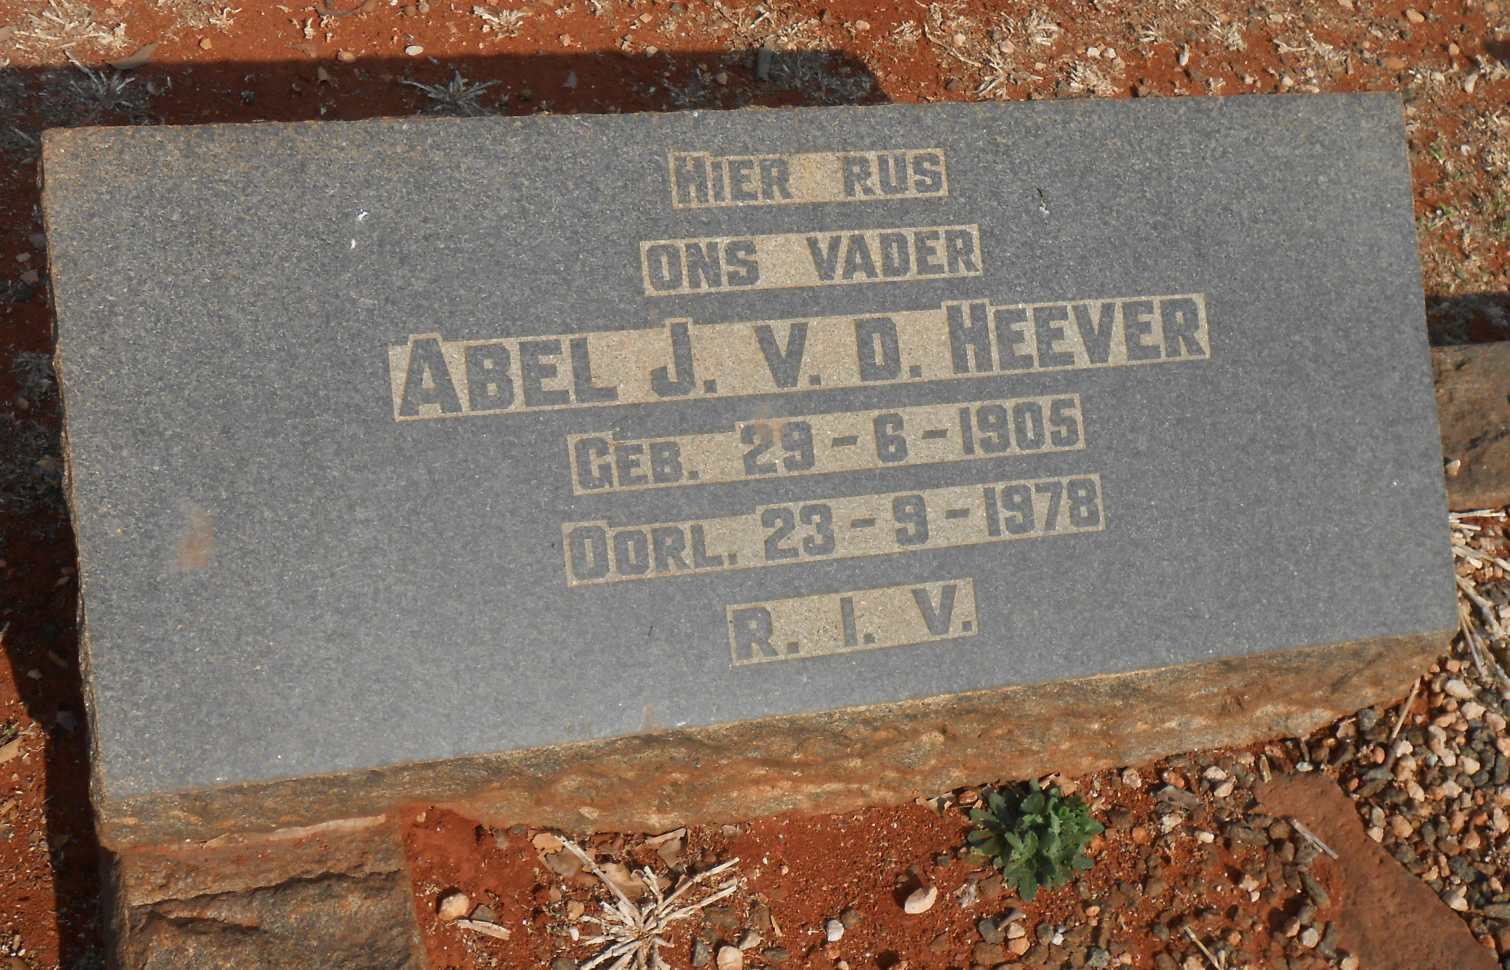 HEEVER Abel J., v.d. 1905-1978